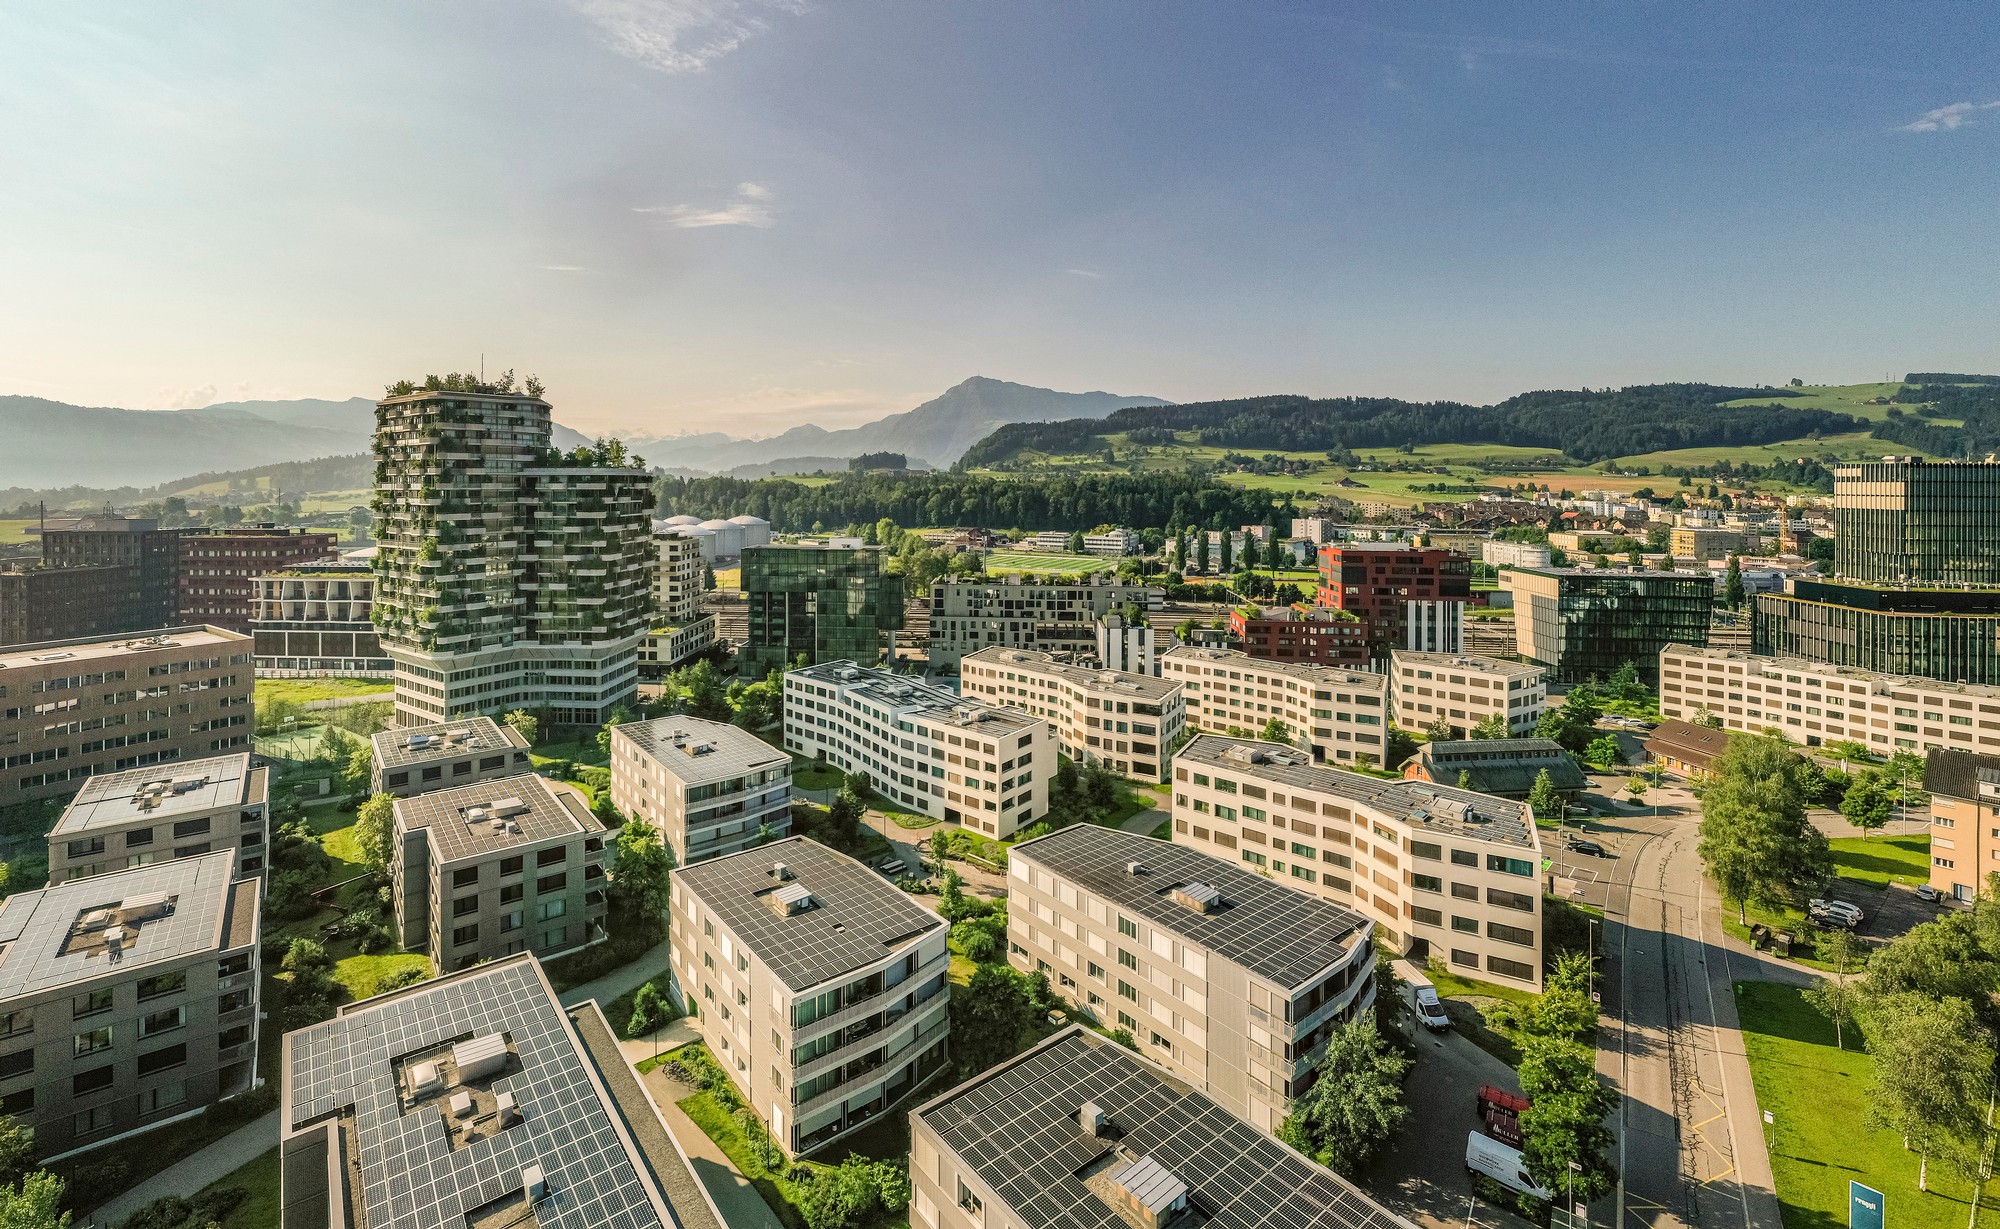 Suurstoffi als erstes Areal in der Schweiz mit DGNB-Zertifikat in Platin ausgezeichnet